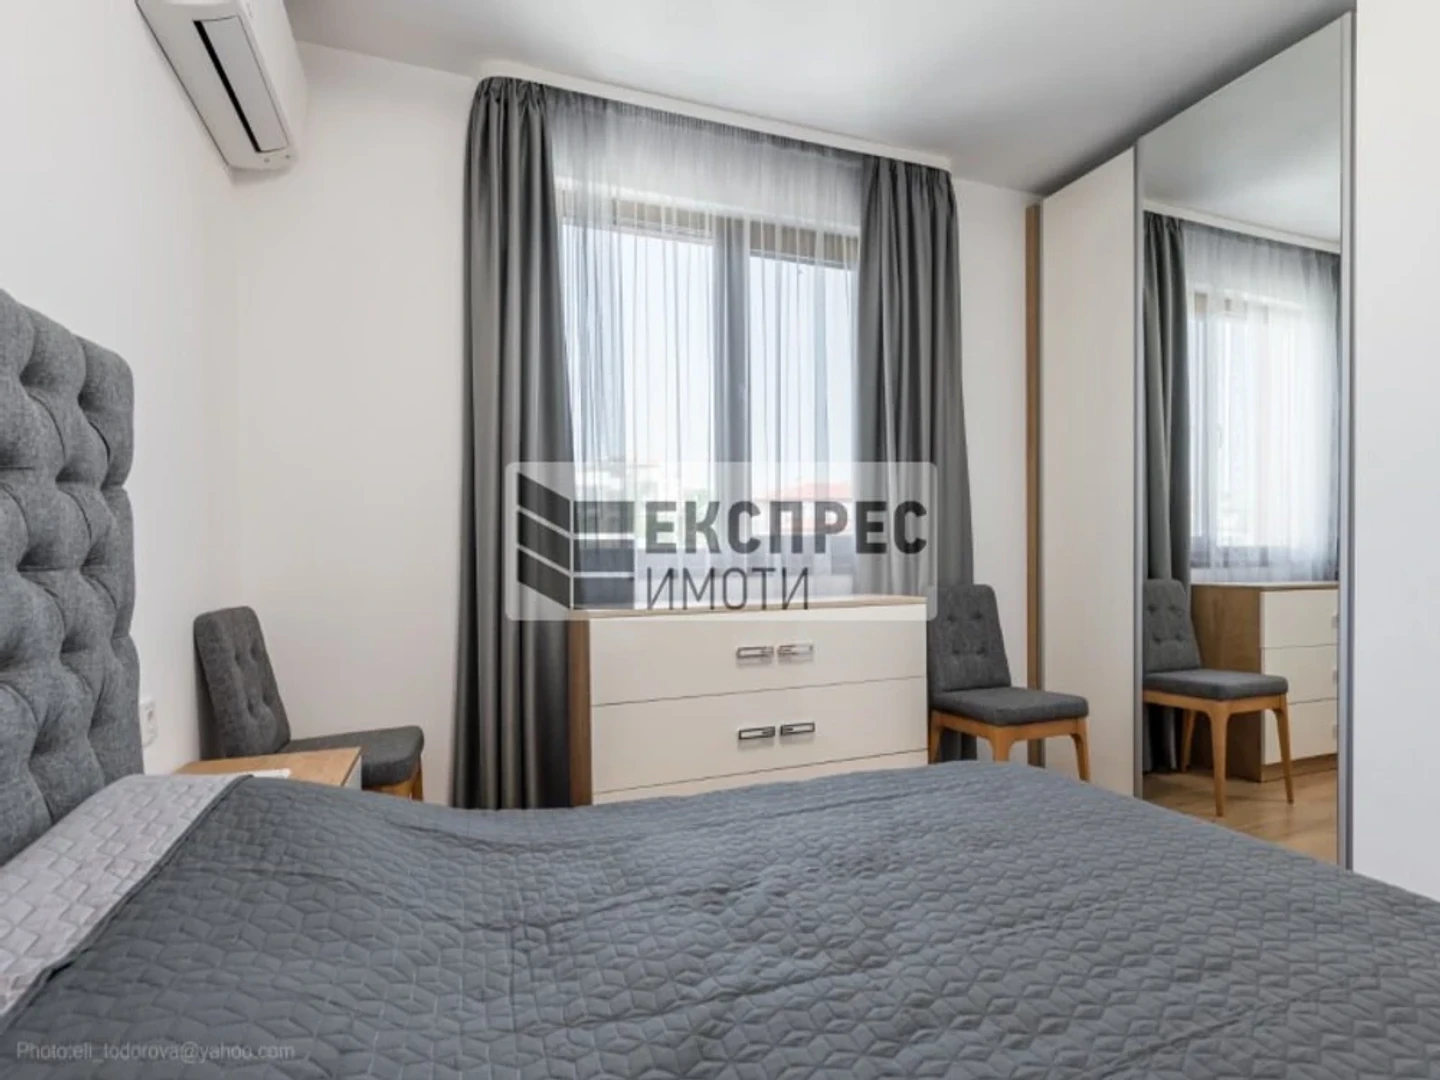 Apartamento moderno e brilhante em Varna